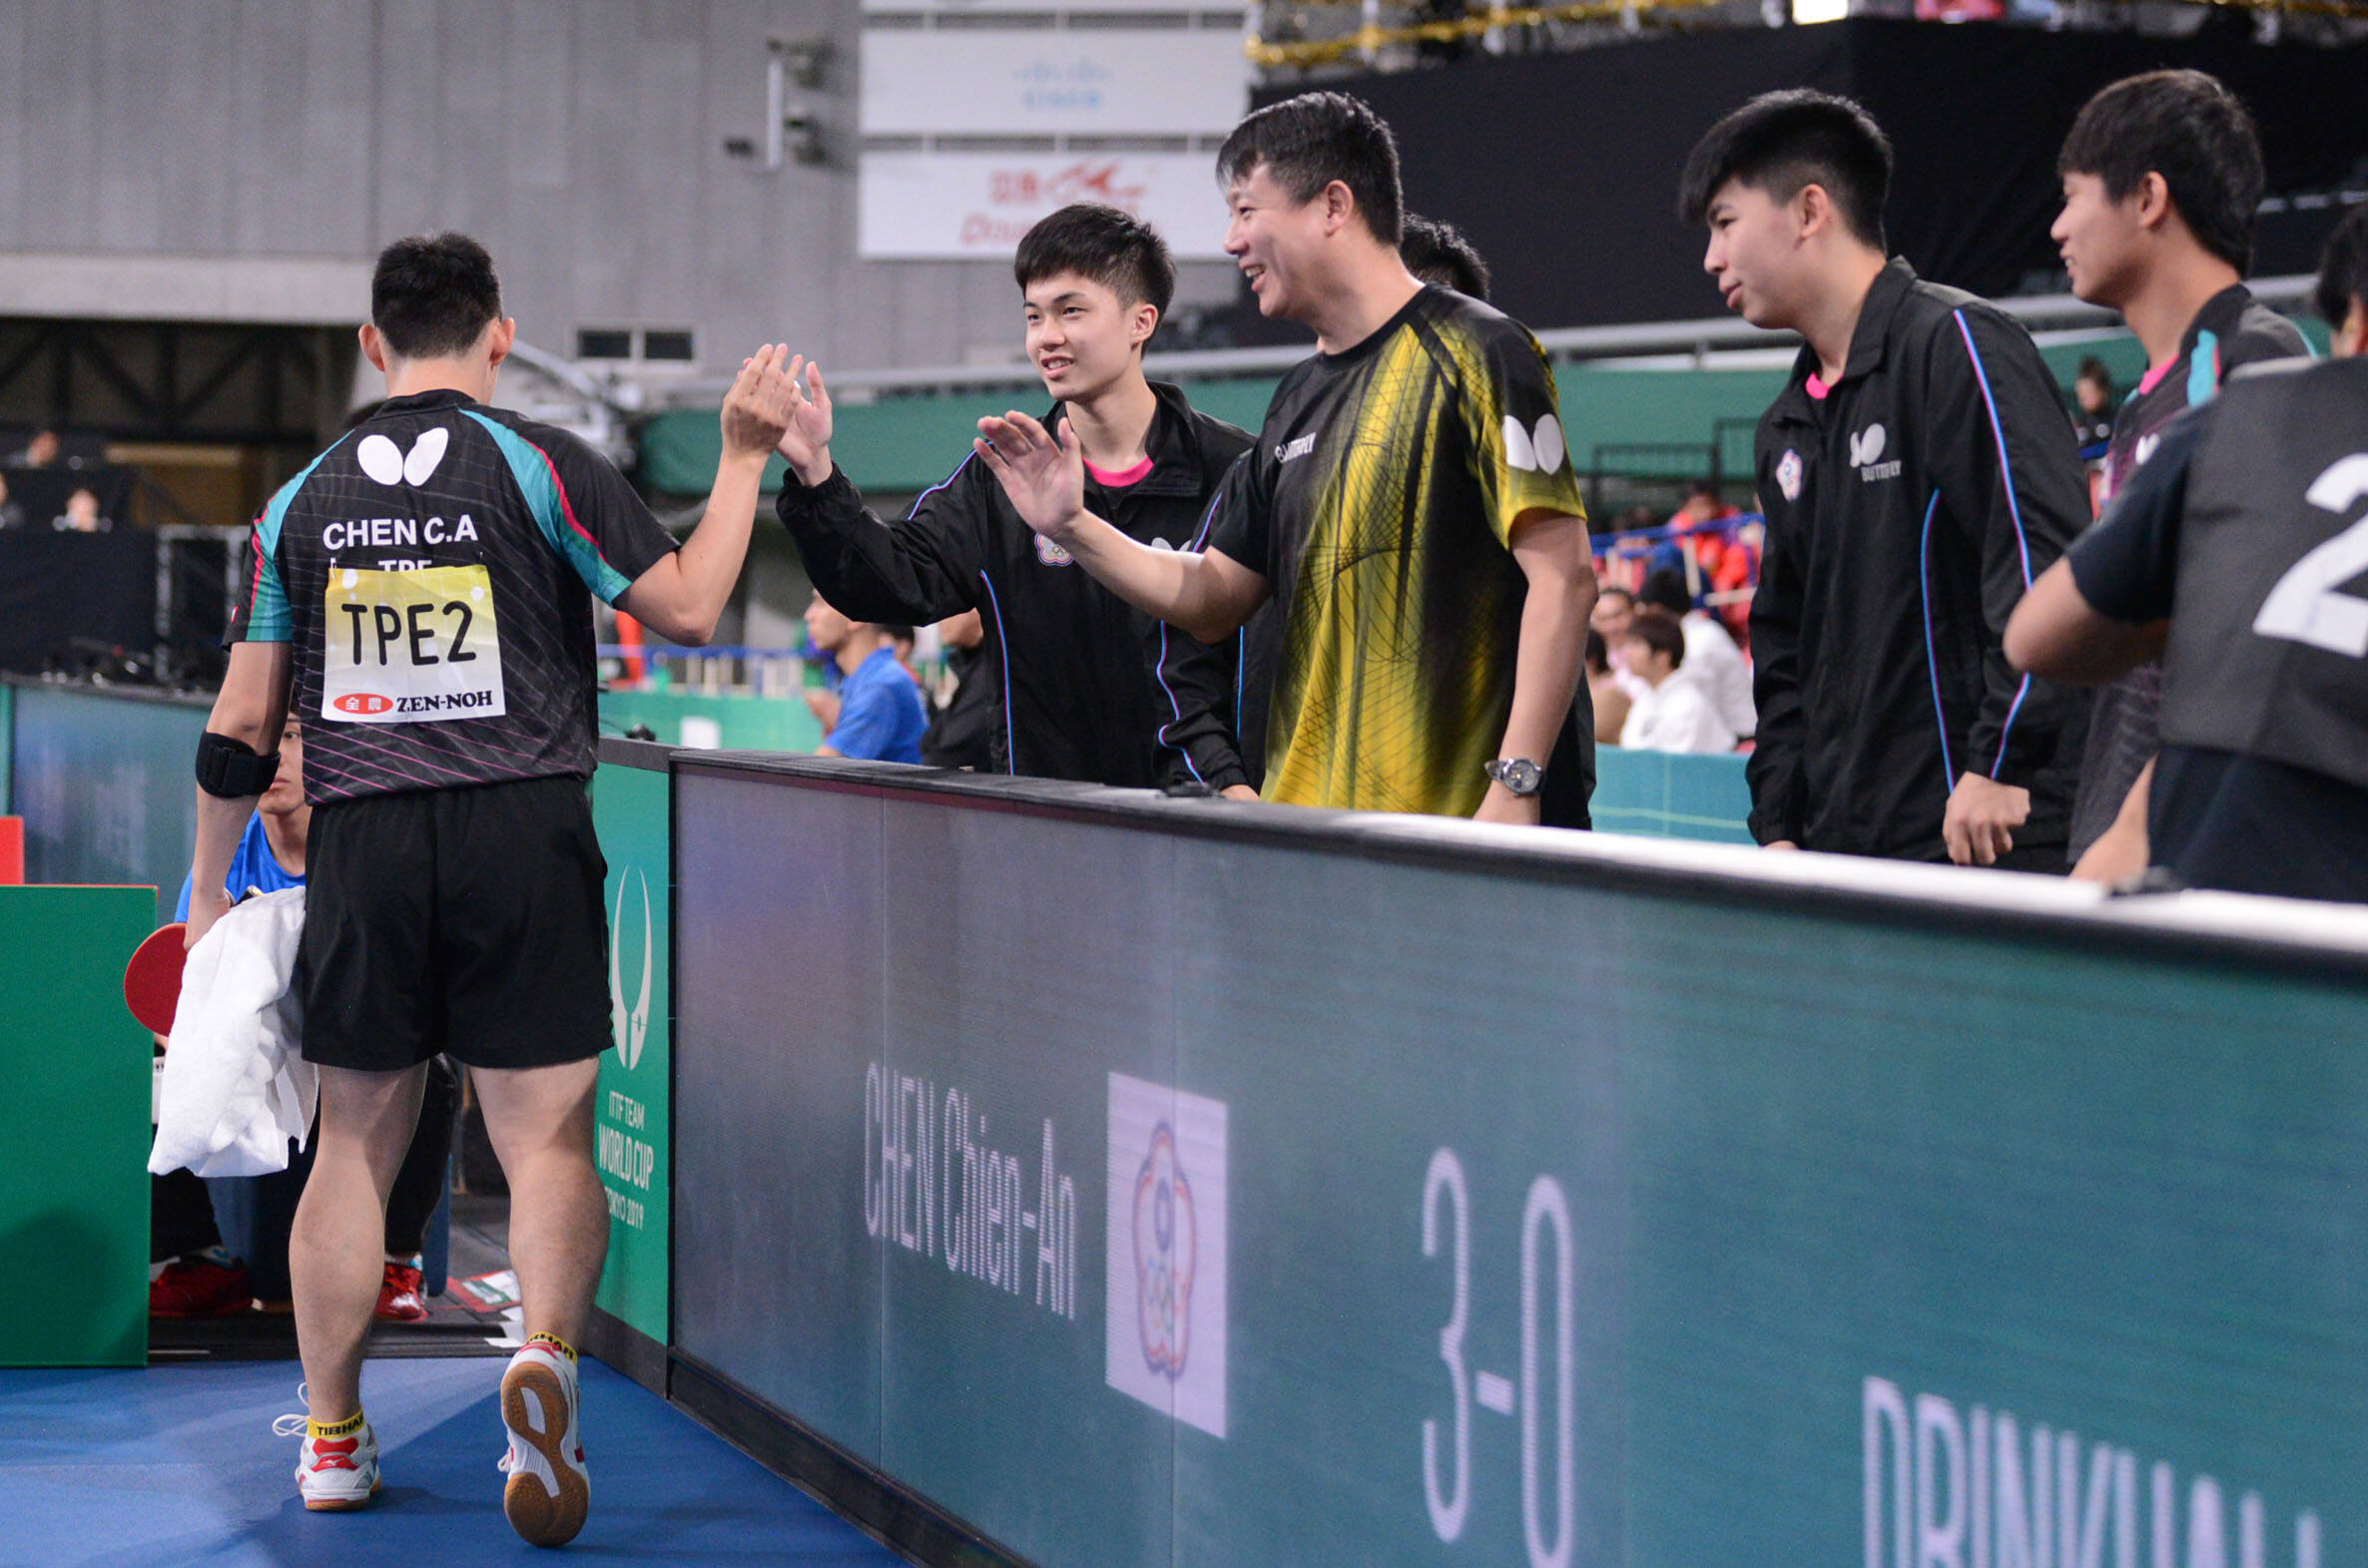 ワールドカップ団体戦19東京 男子は中華台北と韓国が準決勝へ 卓球レポート